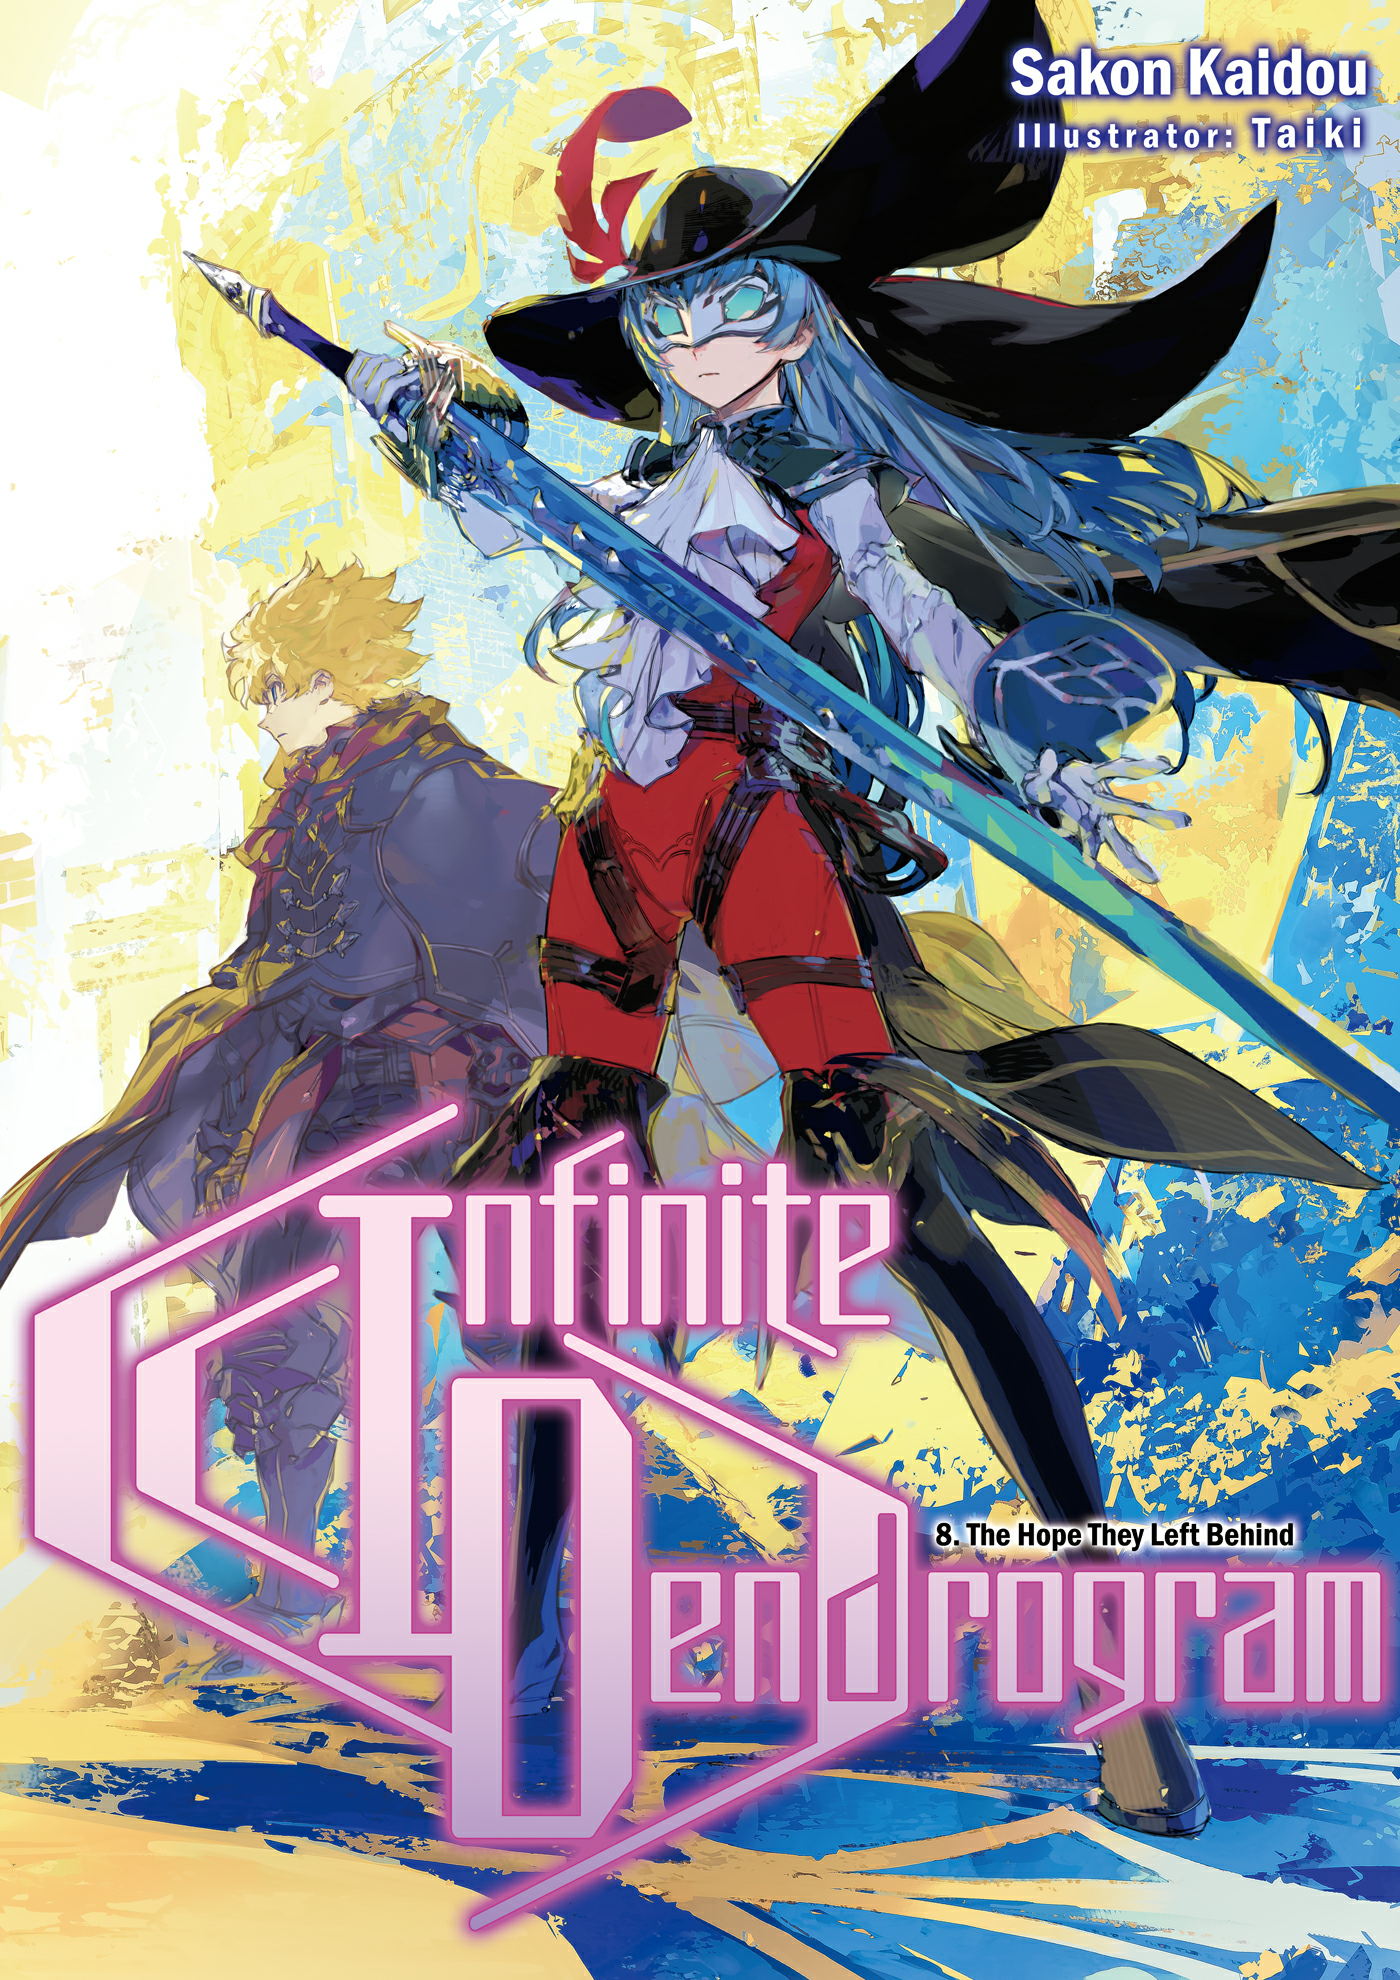 Infinite Dendrogram light novel illustration.